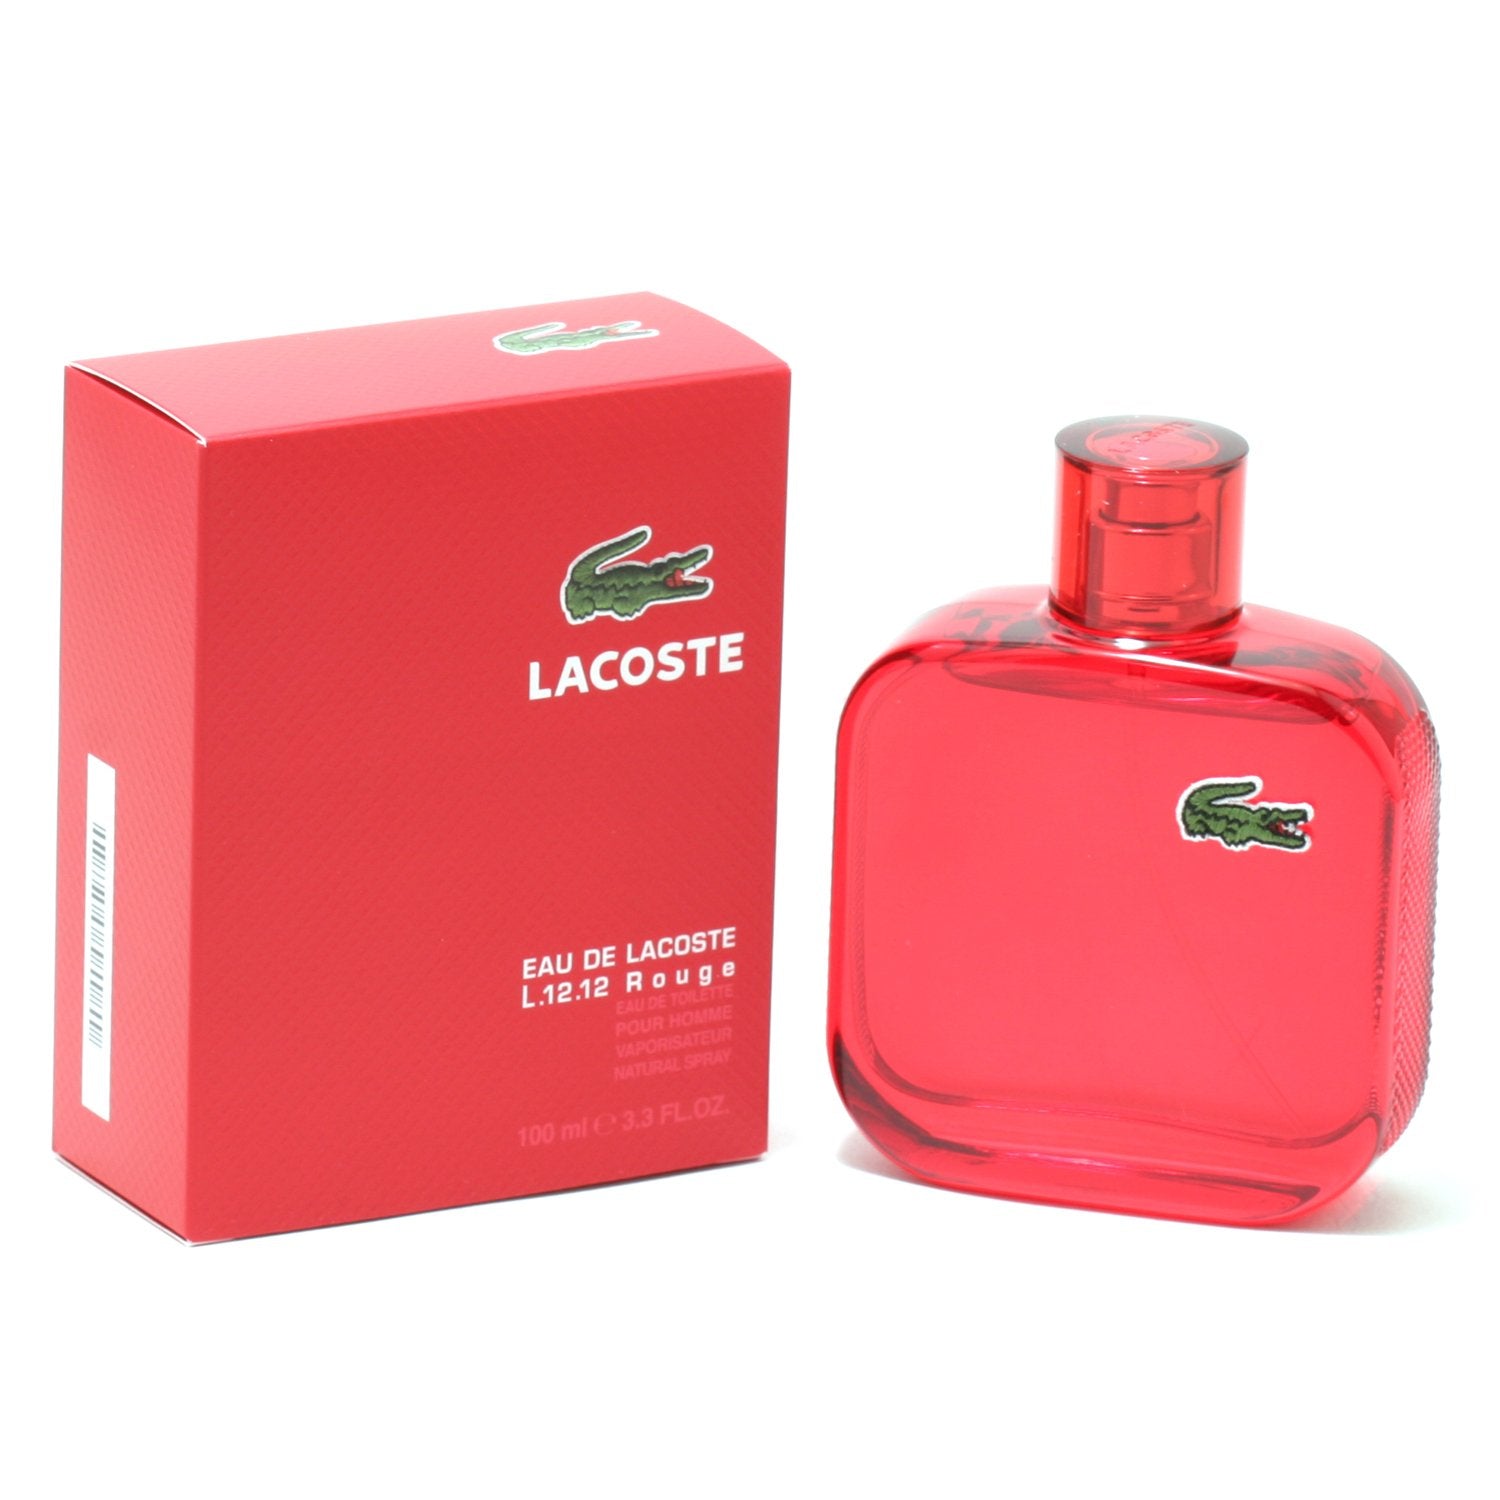 LACOSTE EAU DE LACOSTE L.1212 ROUGE FOR MEN DE TOILETTE SPRAY, 3 – Fragrance Room